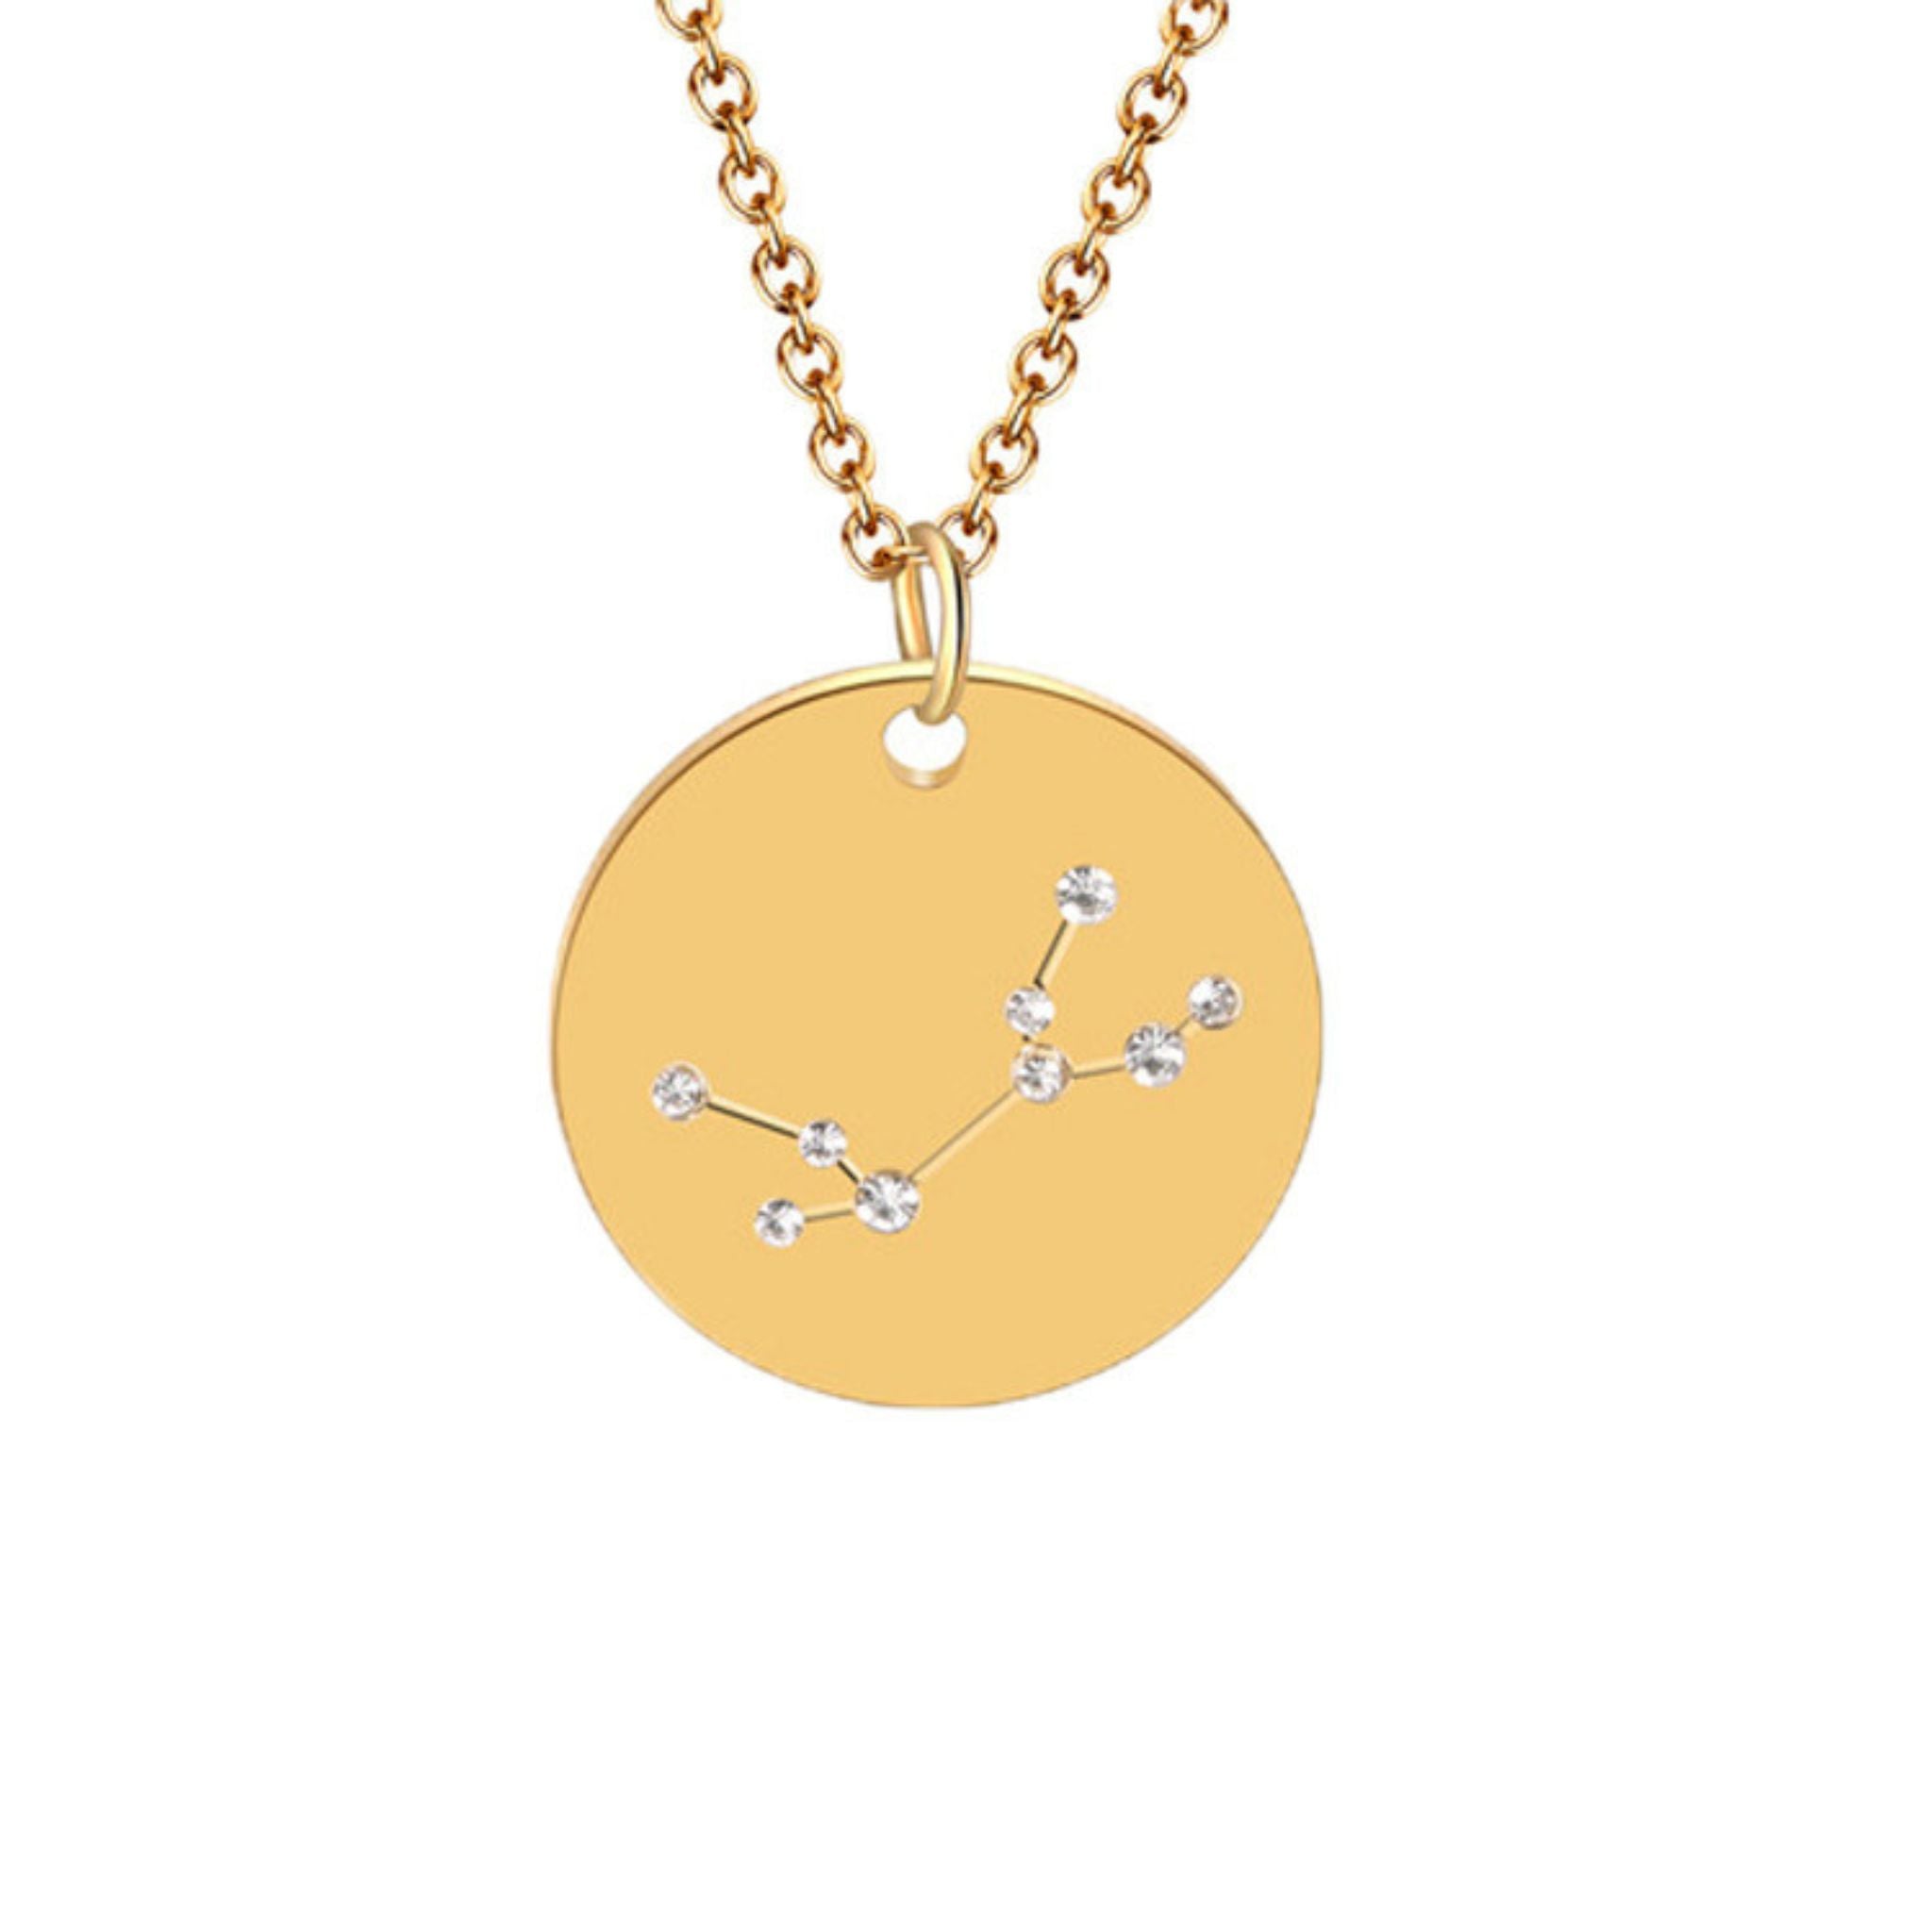 Virgo constellation necklace 